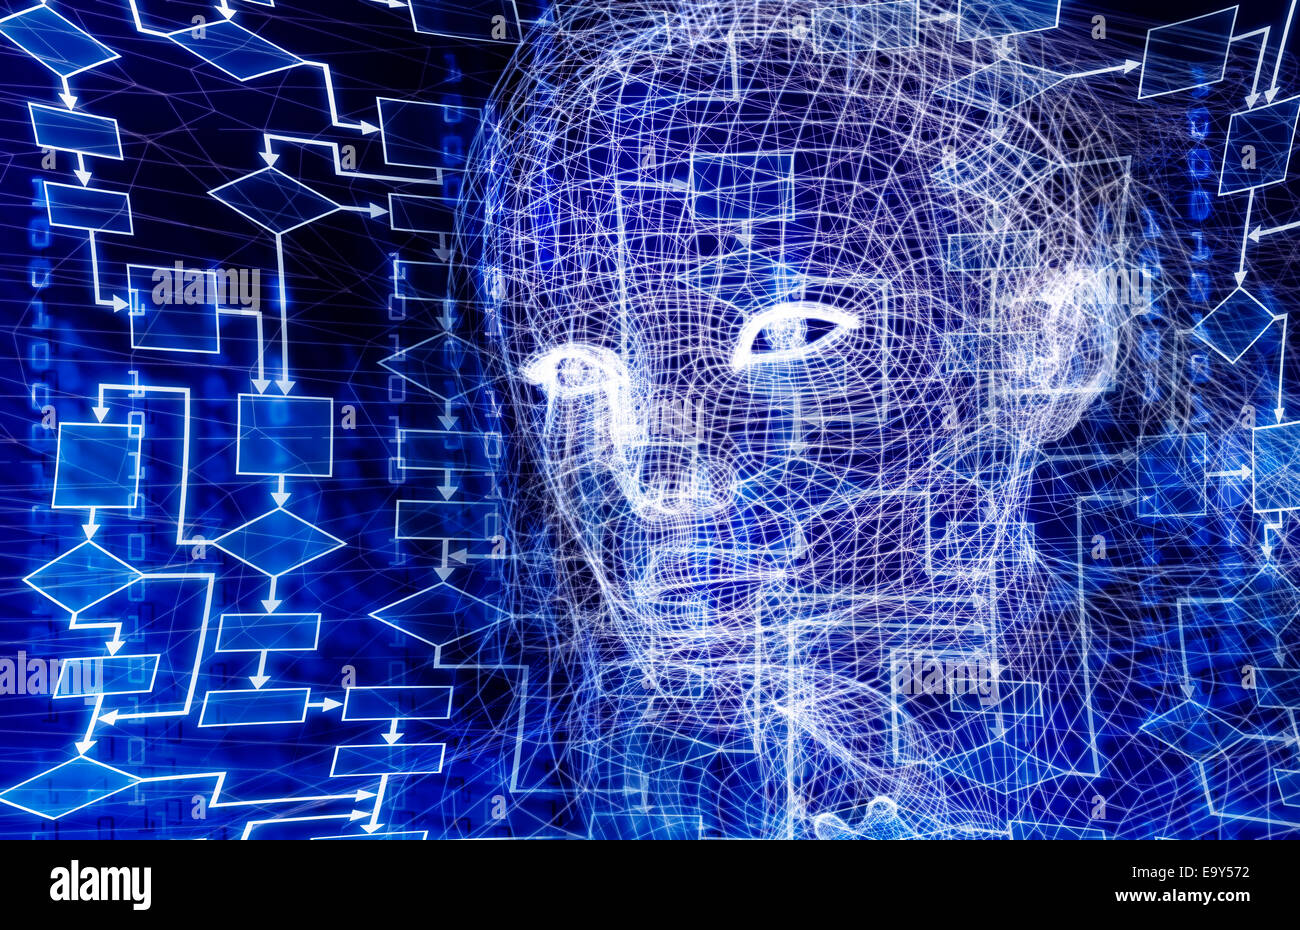 Lizenz verfügbar unter MaximImages.com - Woman Digital Virtual Reality Human Face konzeptionelle 3D-Darstellung mit Flussdiagramm und binärem Code auf blau Stockfoto